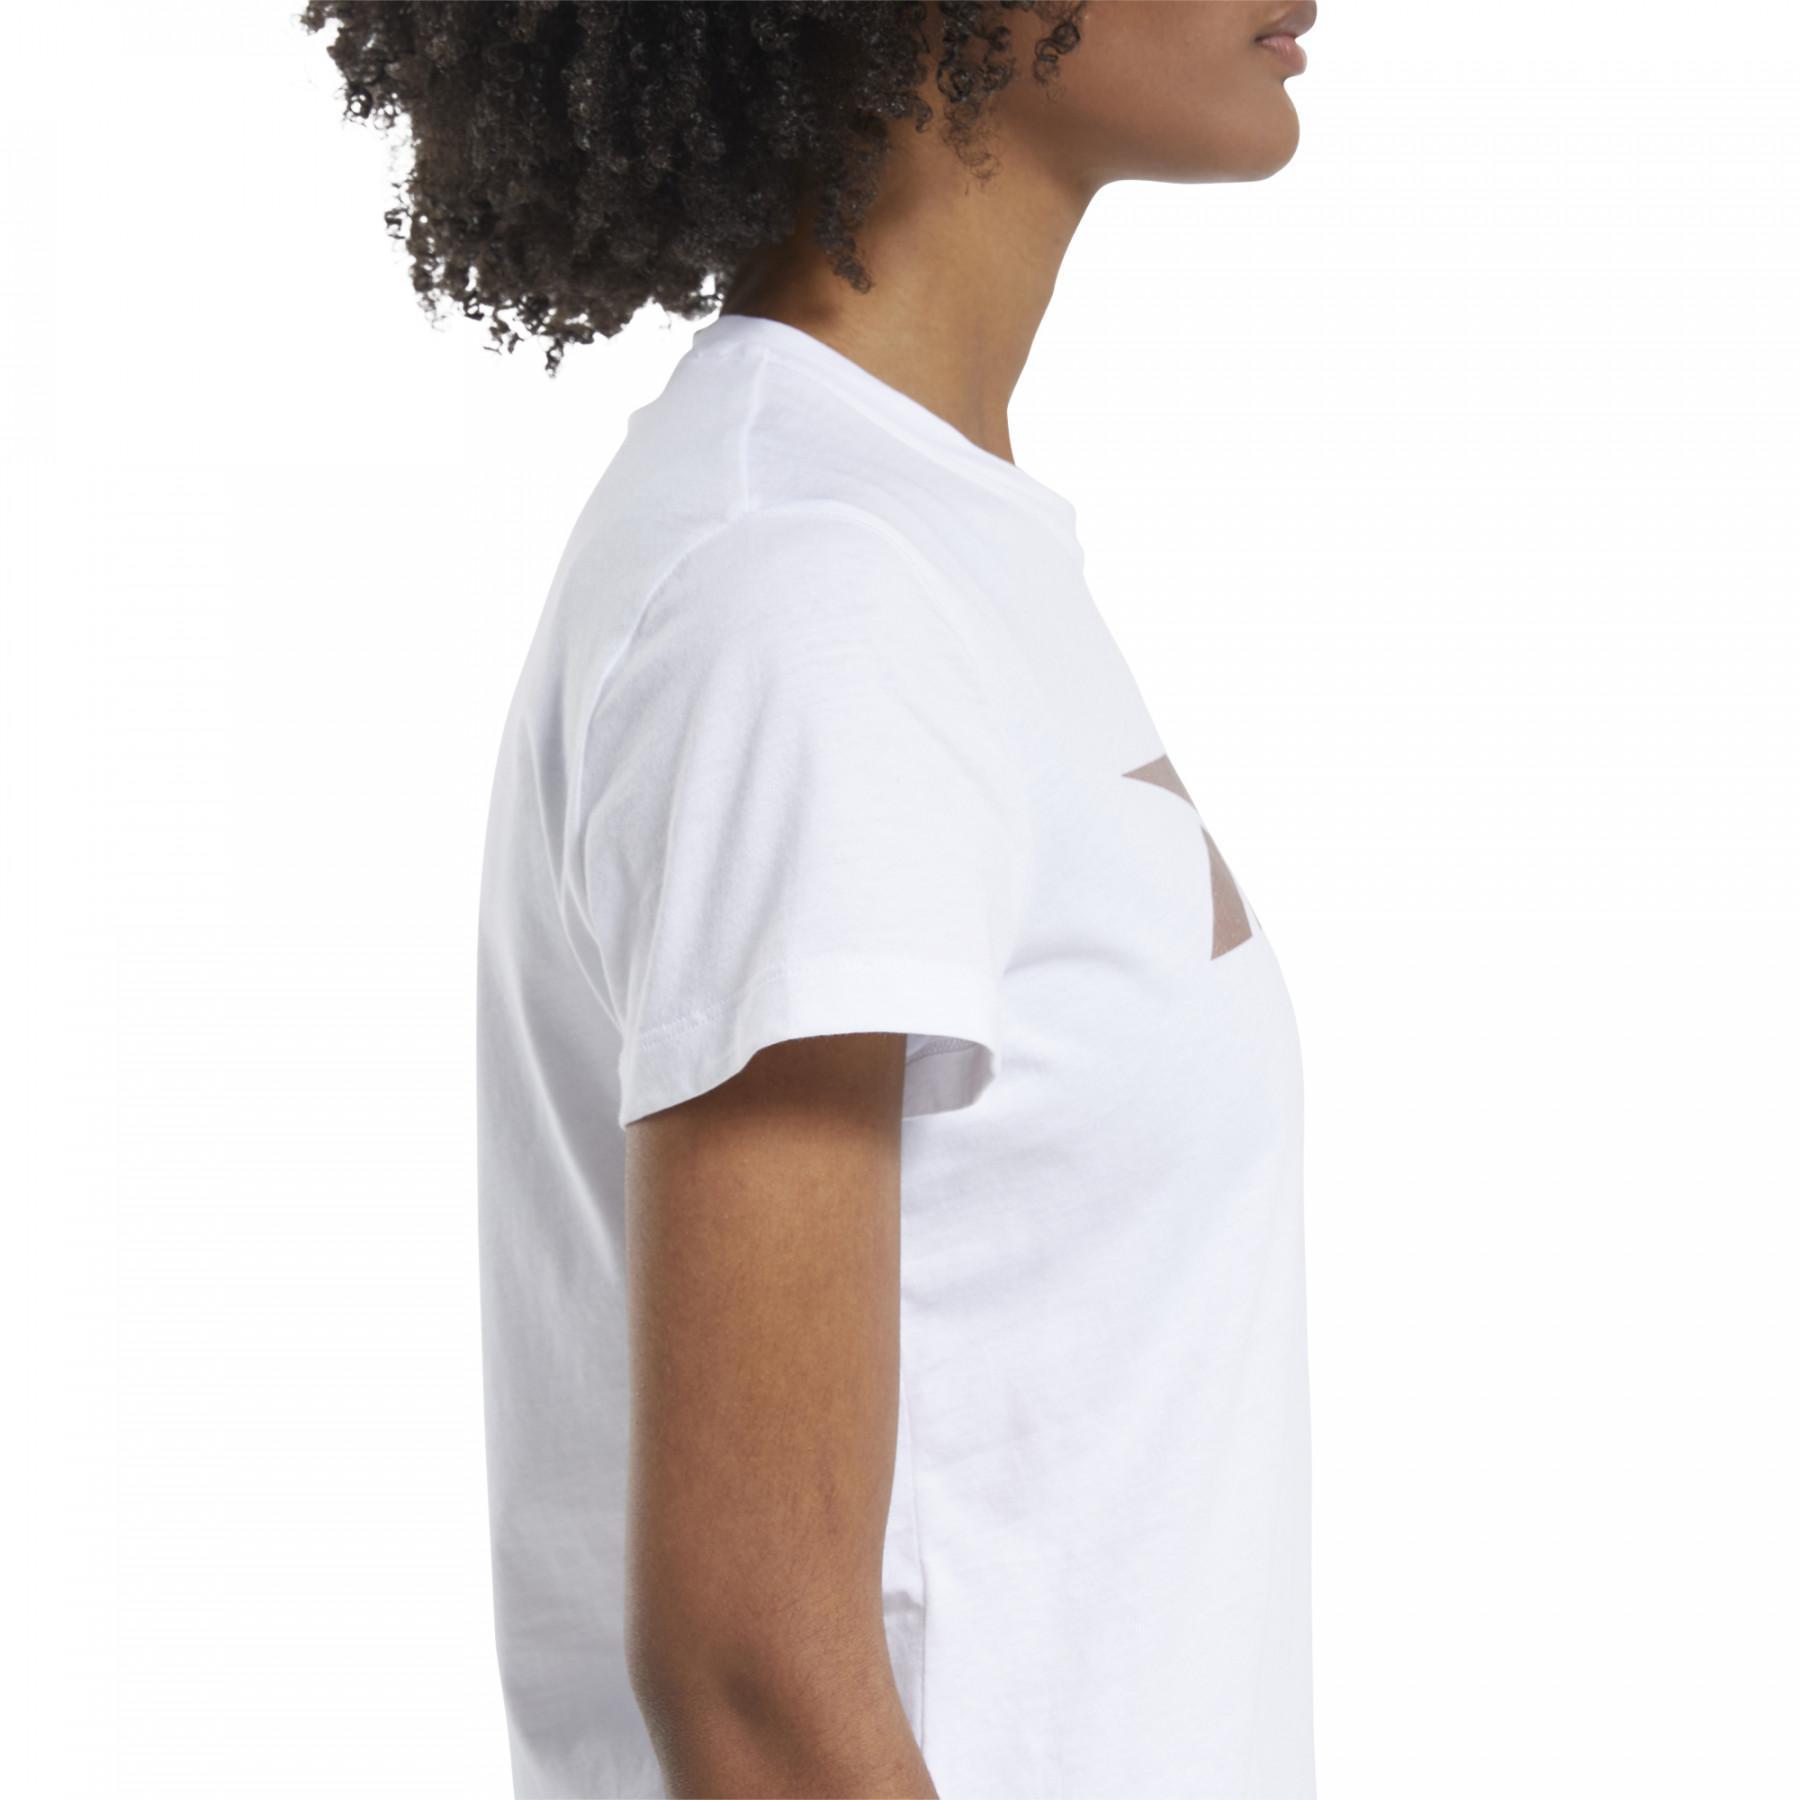 Camiseta de mujer Reebok Training Essentials Vector Graphic